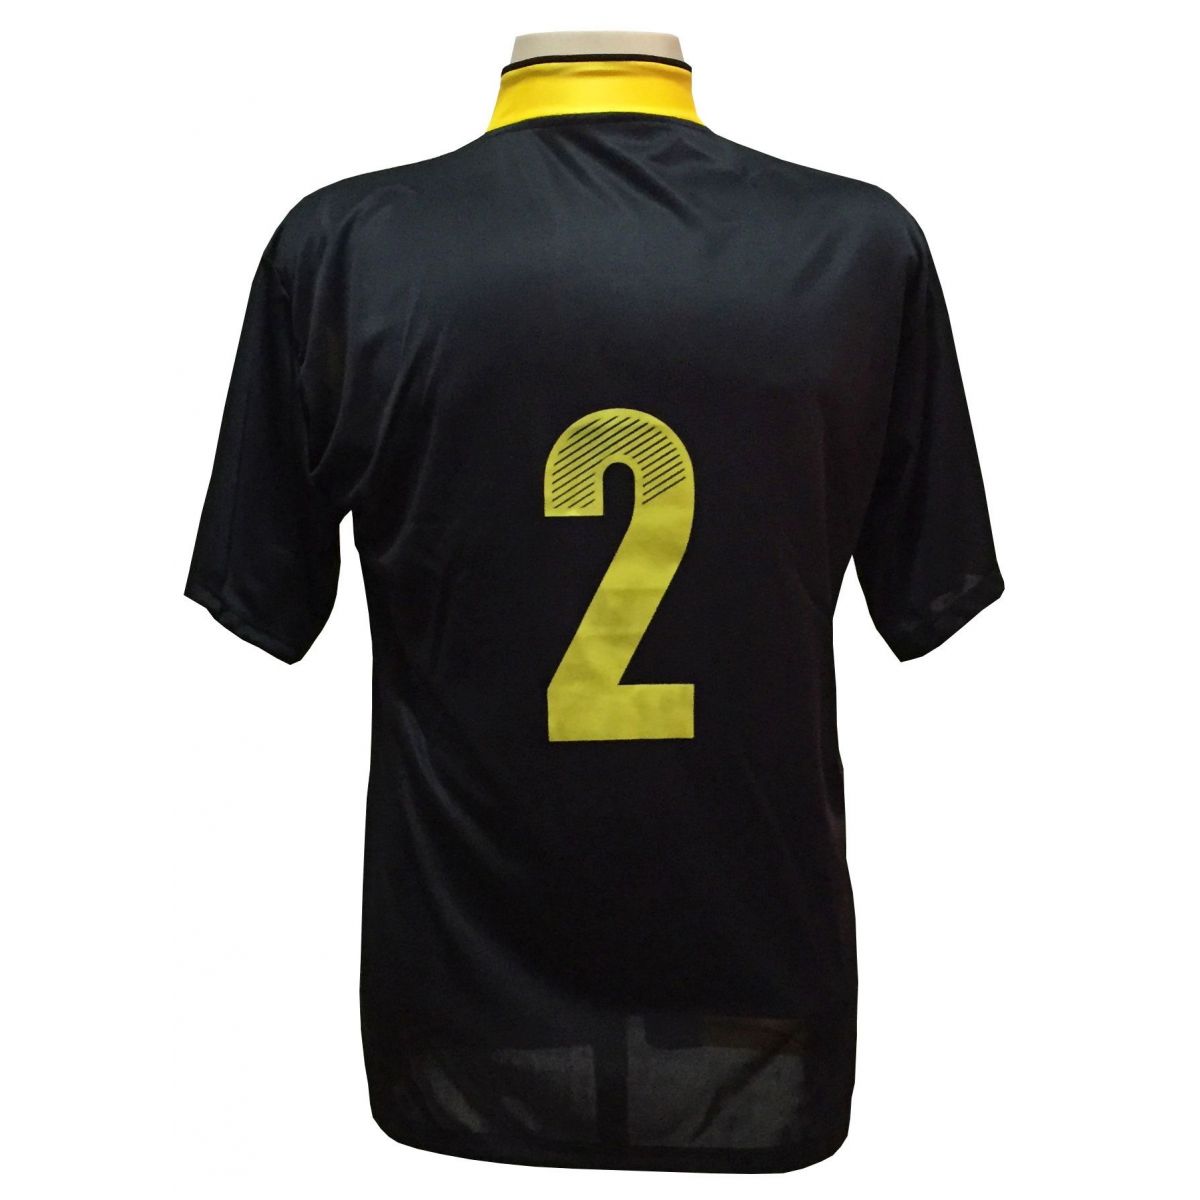 Uniforme Esportivo com 14 camisas modelo Suécia Preto/Amarelo + 14 calções modelo Madrid Preto + Brindes